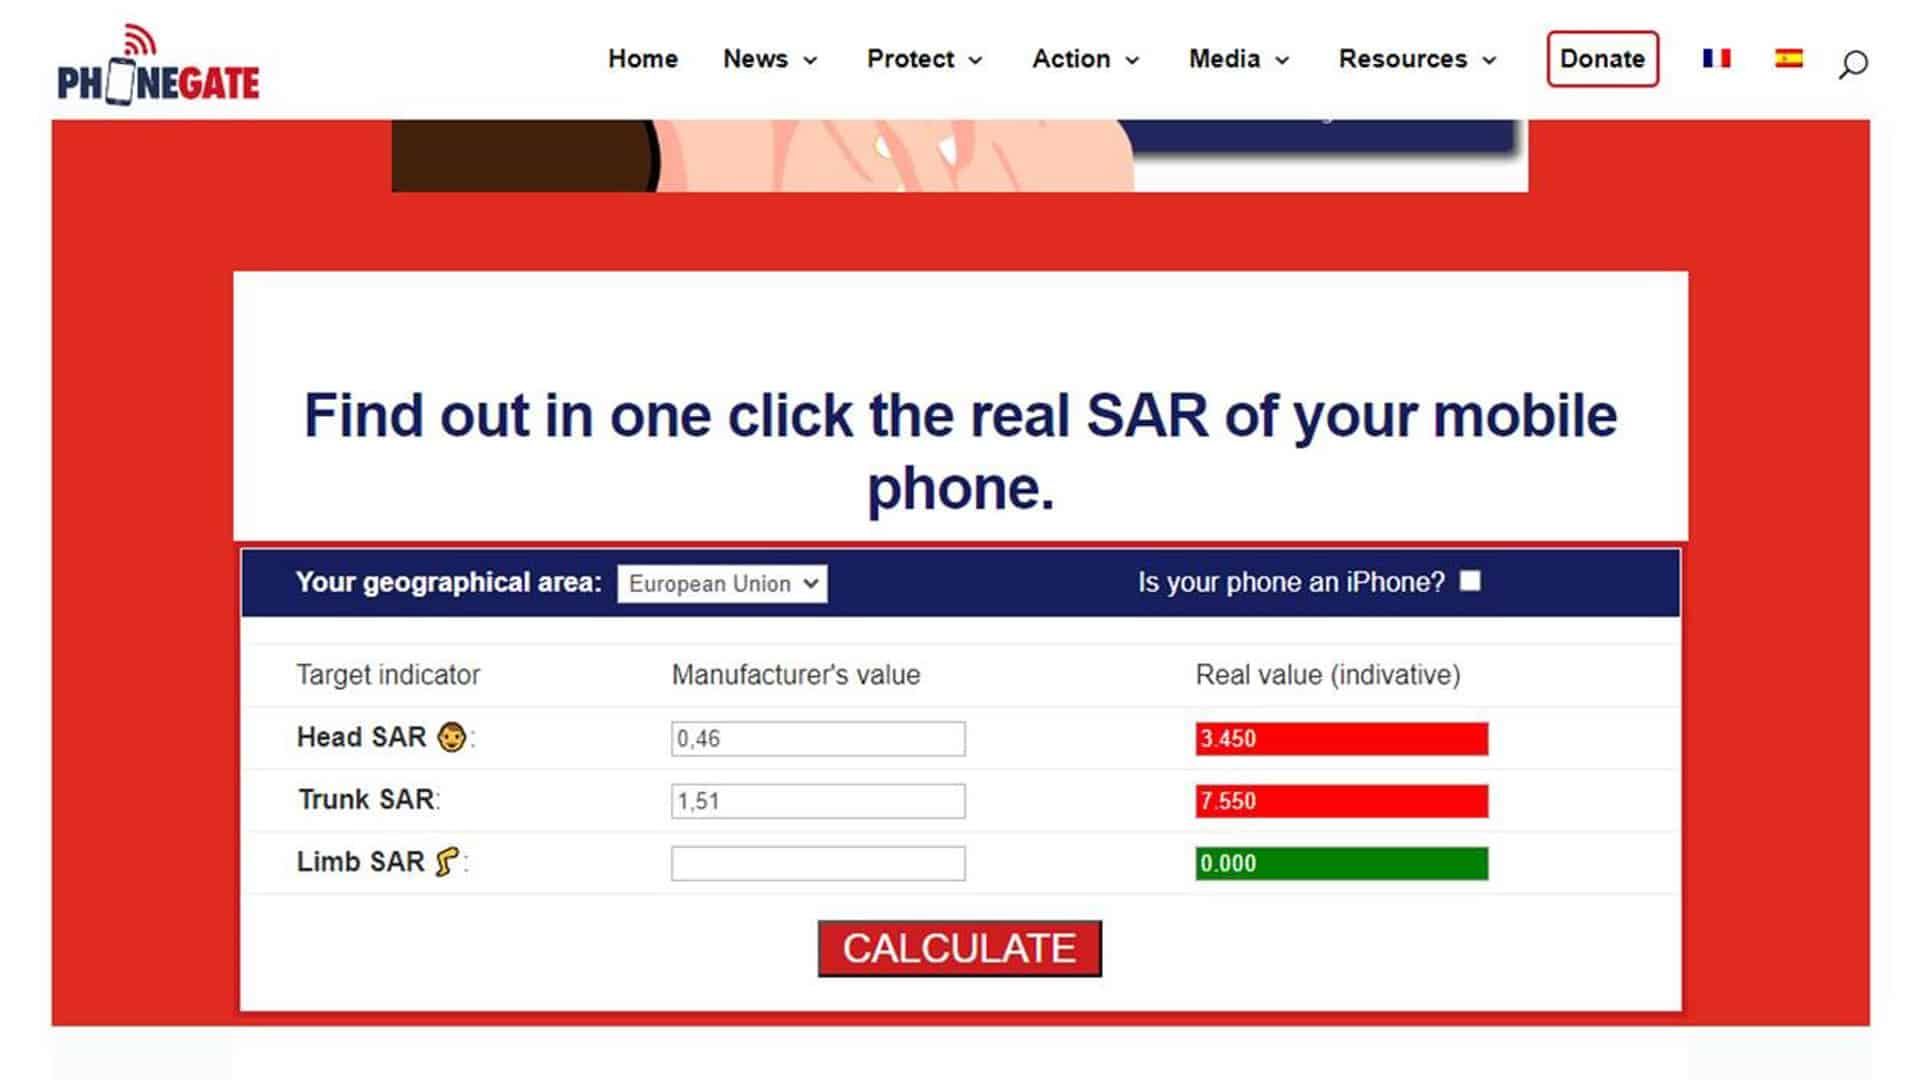 Bild zum SAR-Wert von Mobiltelefonen